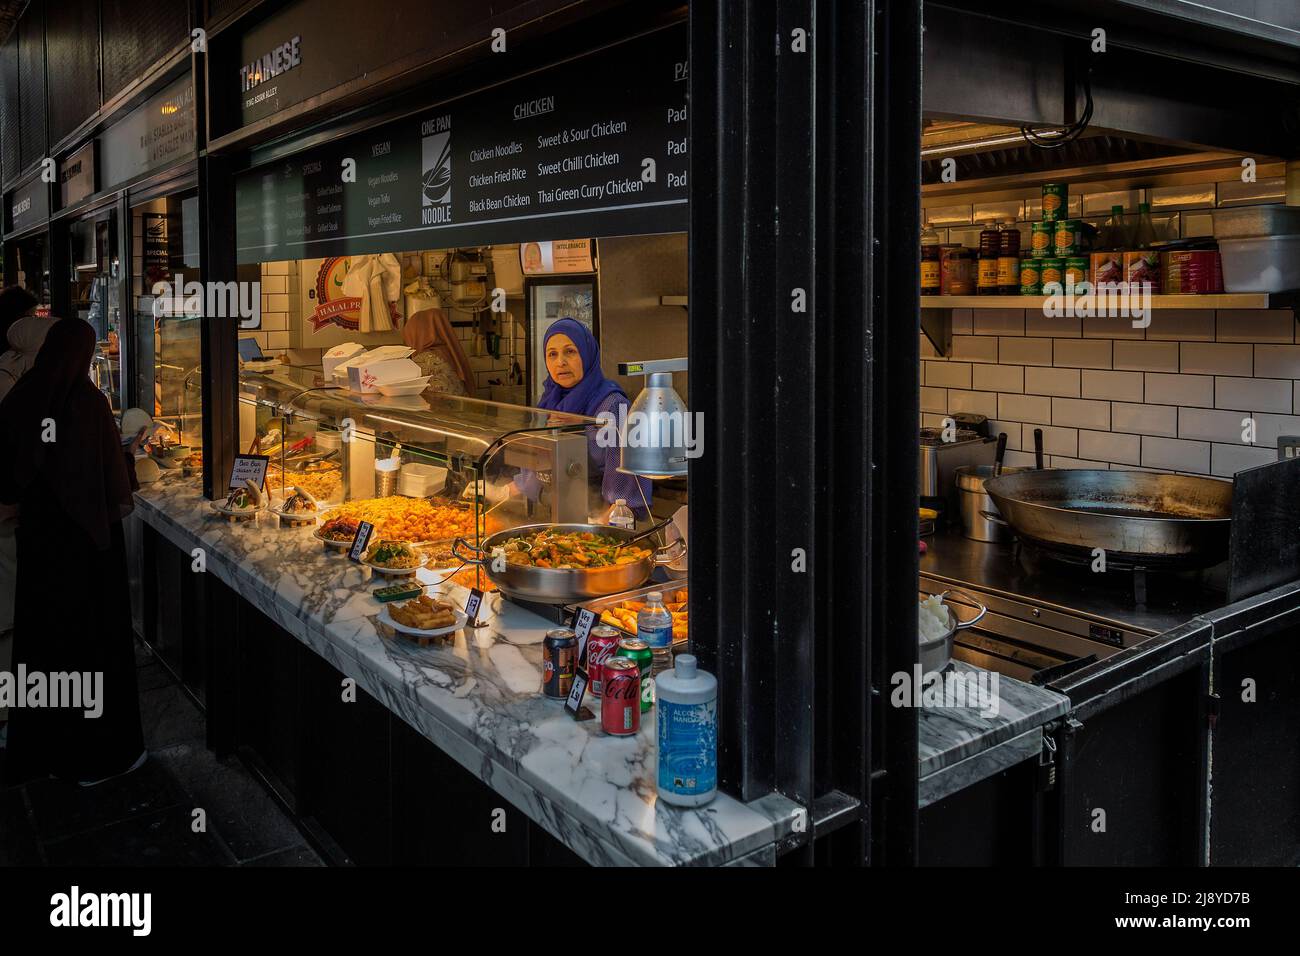 L'un des nombreux kiosques alimentaires servant une cuisine du monde entier au marché Camden. Banque D'Images